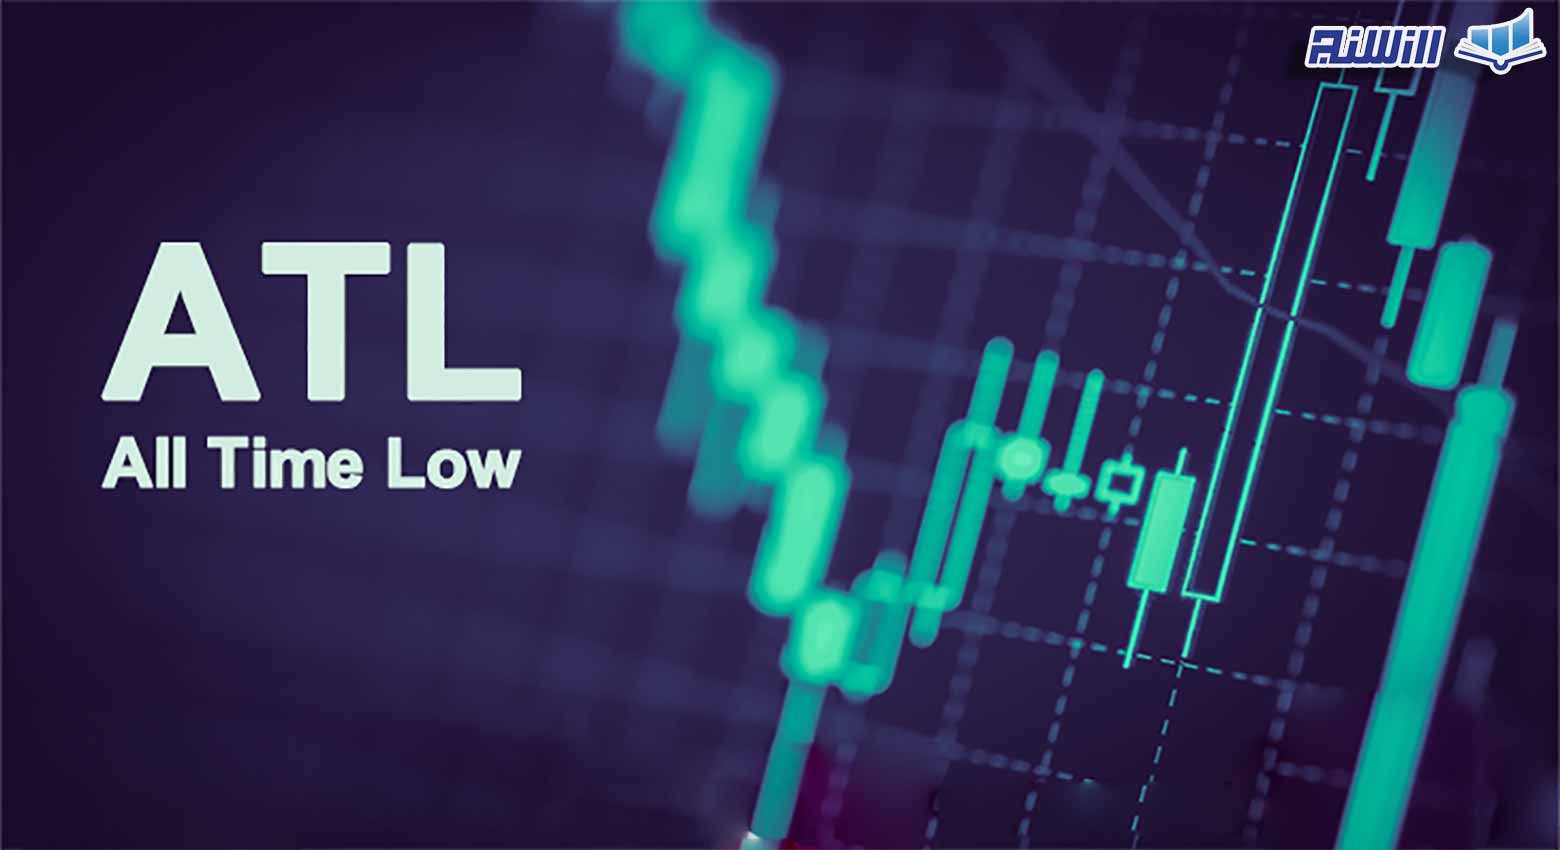 مفهوم کف قیمت یا ATL چیست؟